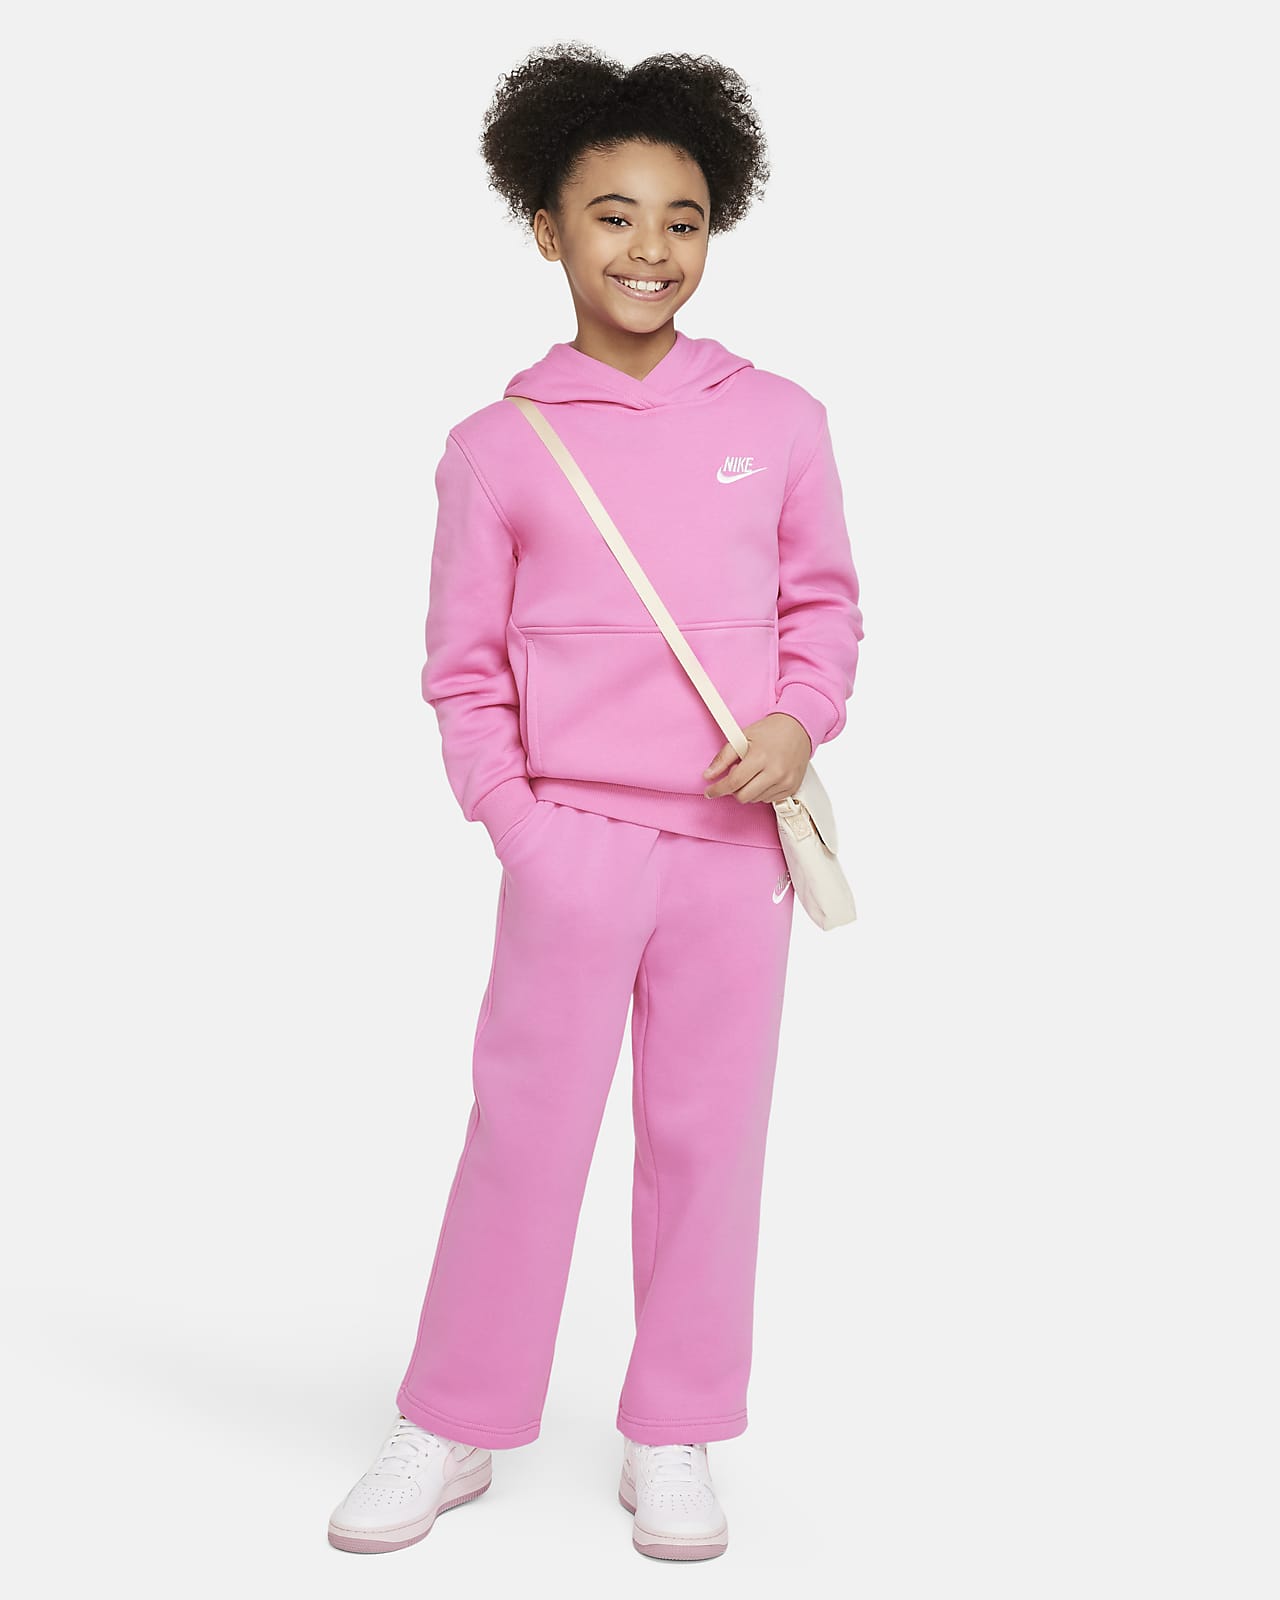 Nike Sportswear Tech Fleece Big Kids' (Girls') Pants in Pink - ShopStyle